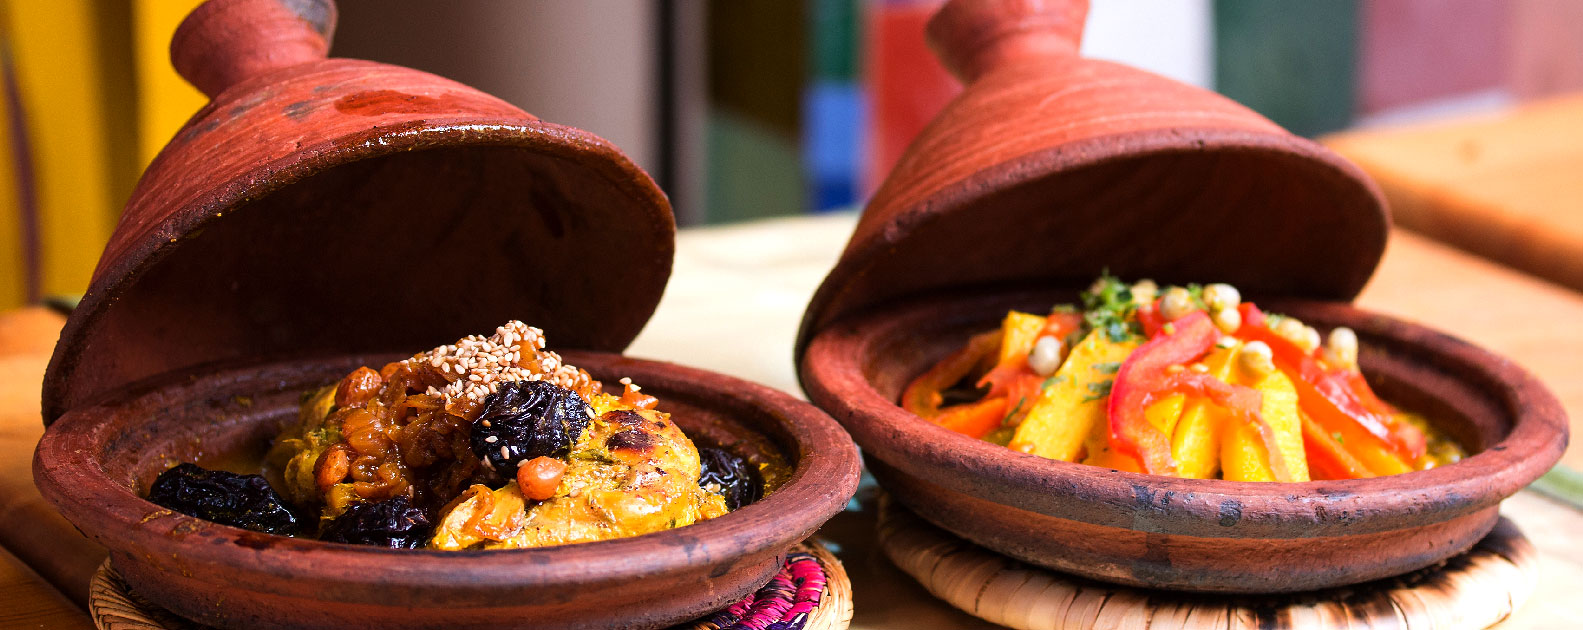 Le delizie della gastronomia marocchina